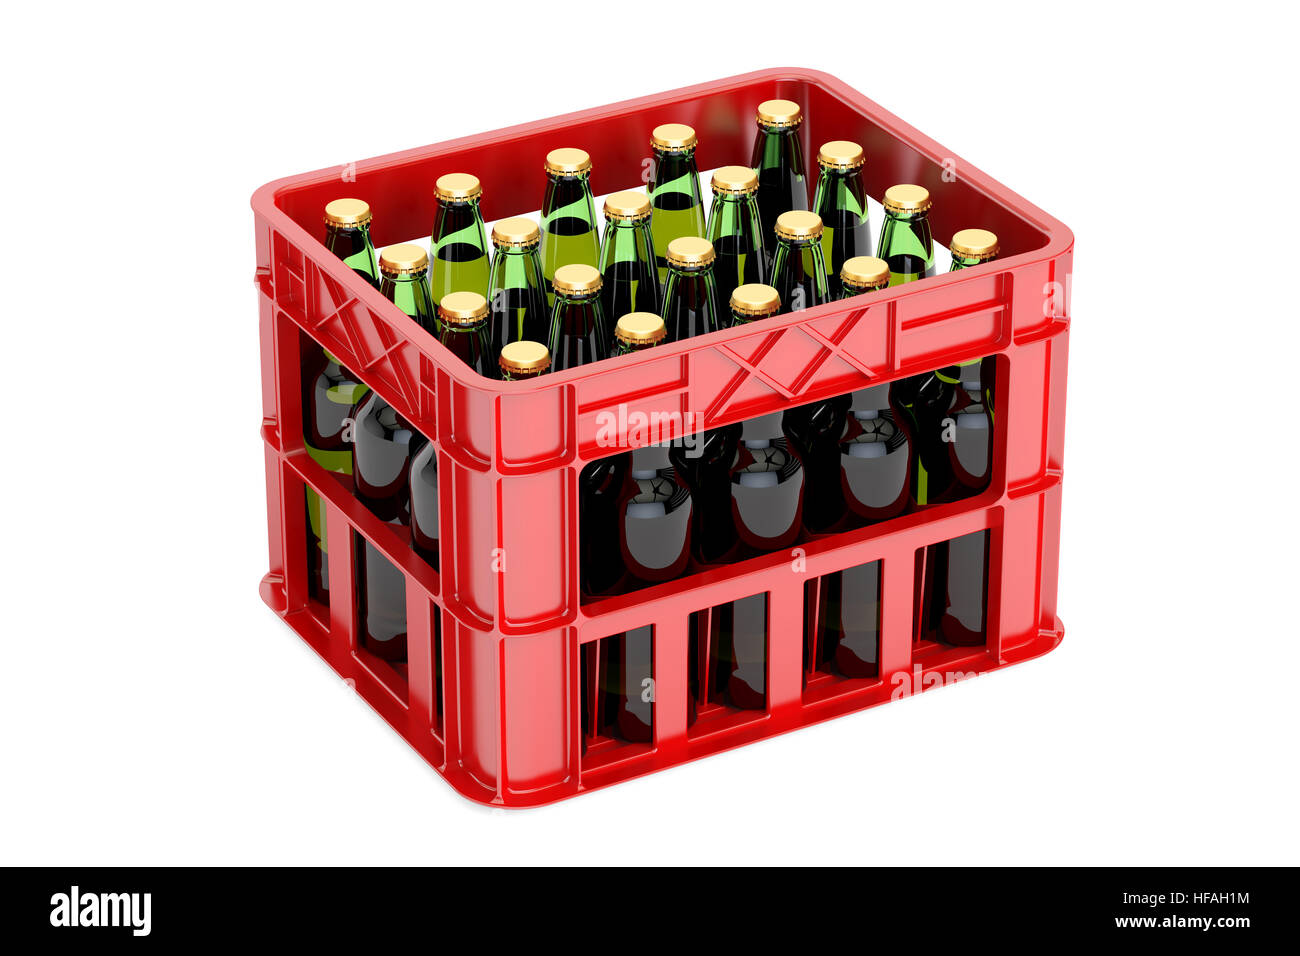 Crate of beer Banque d'images détourées - Alamy